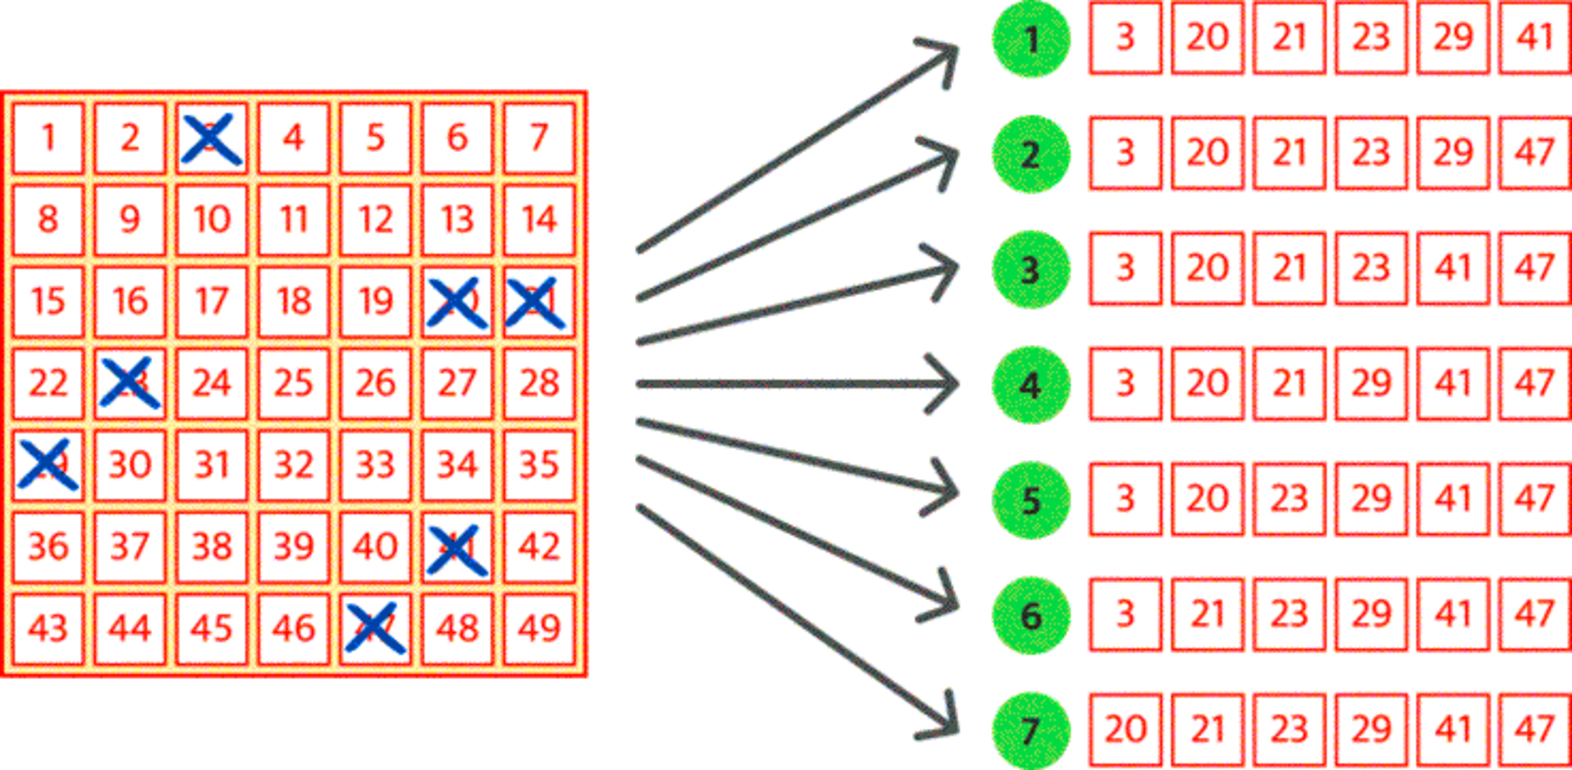 Beispielbild der möglichen Vollsystem 007 Lottoreihen Kombinationen